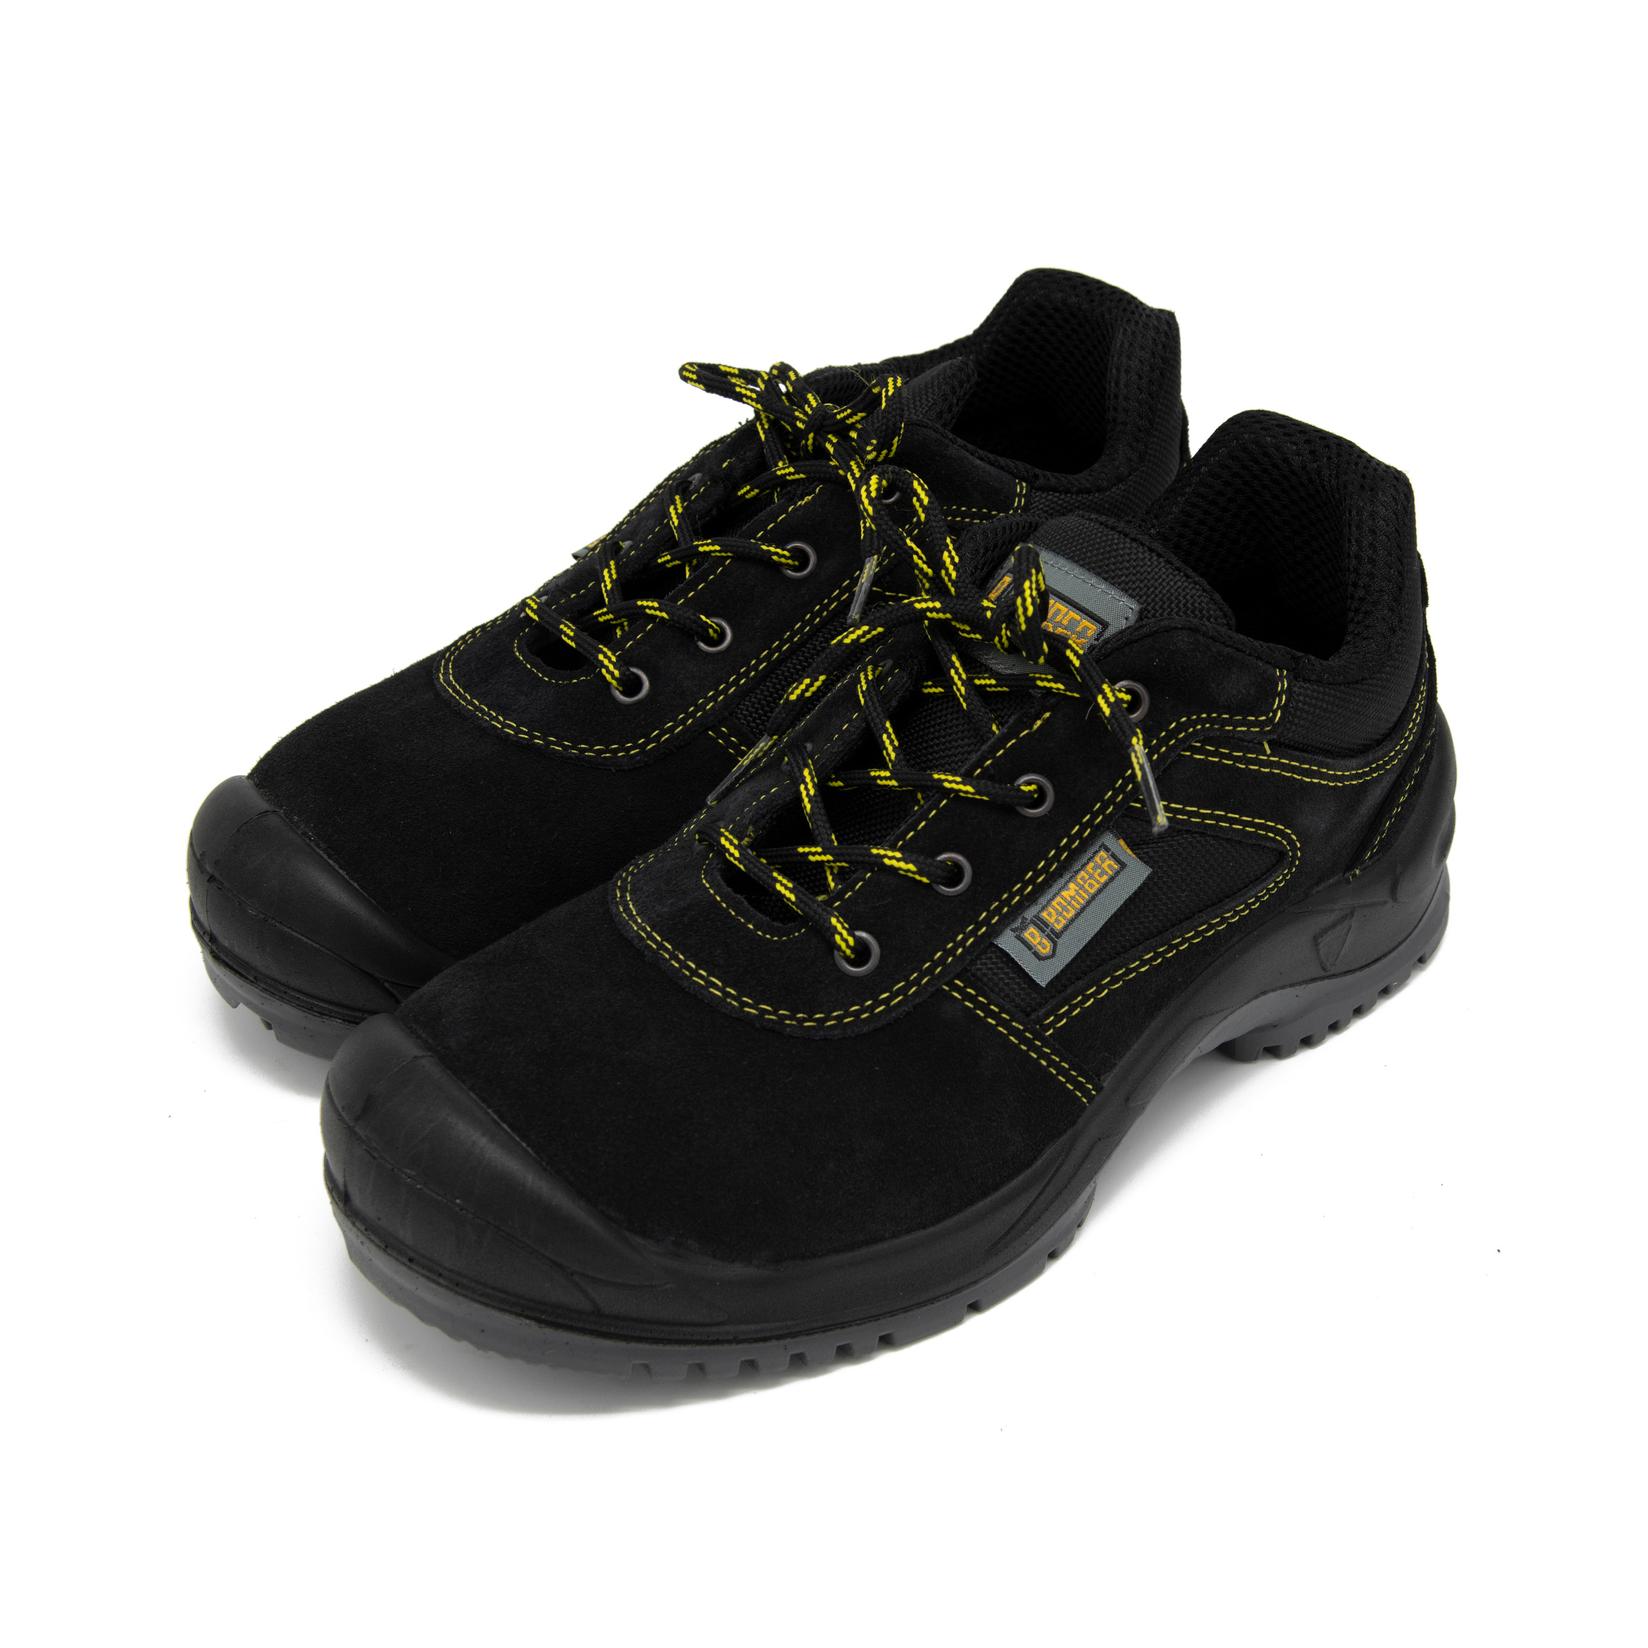 Selected image for BOMBER Plitka zaštitna cipela Neon WS